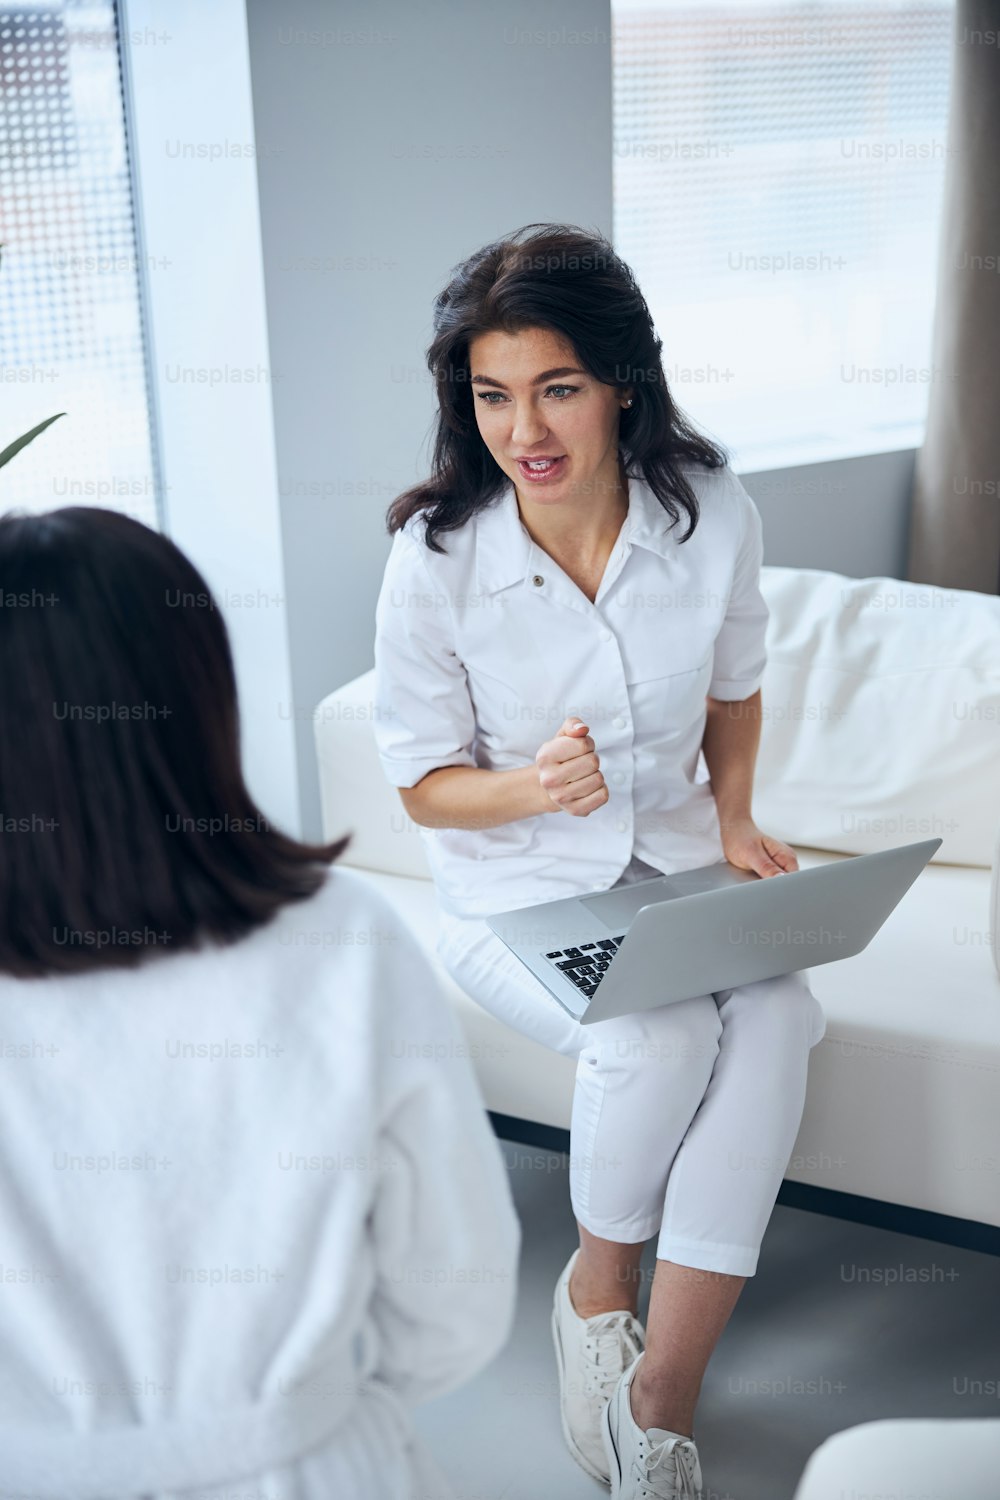 Trabajadora de la salud concentrada con una computadora portátil en las rodillas entrevistando a una mujer durante la consulta